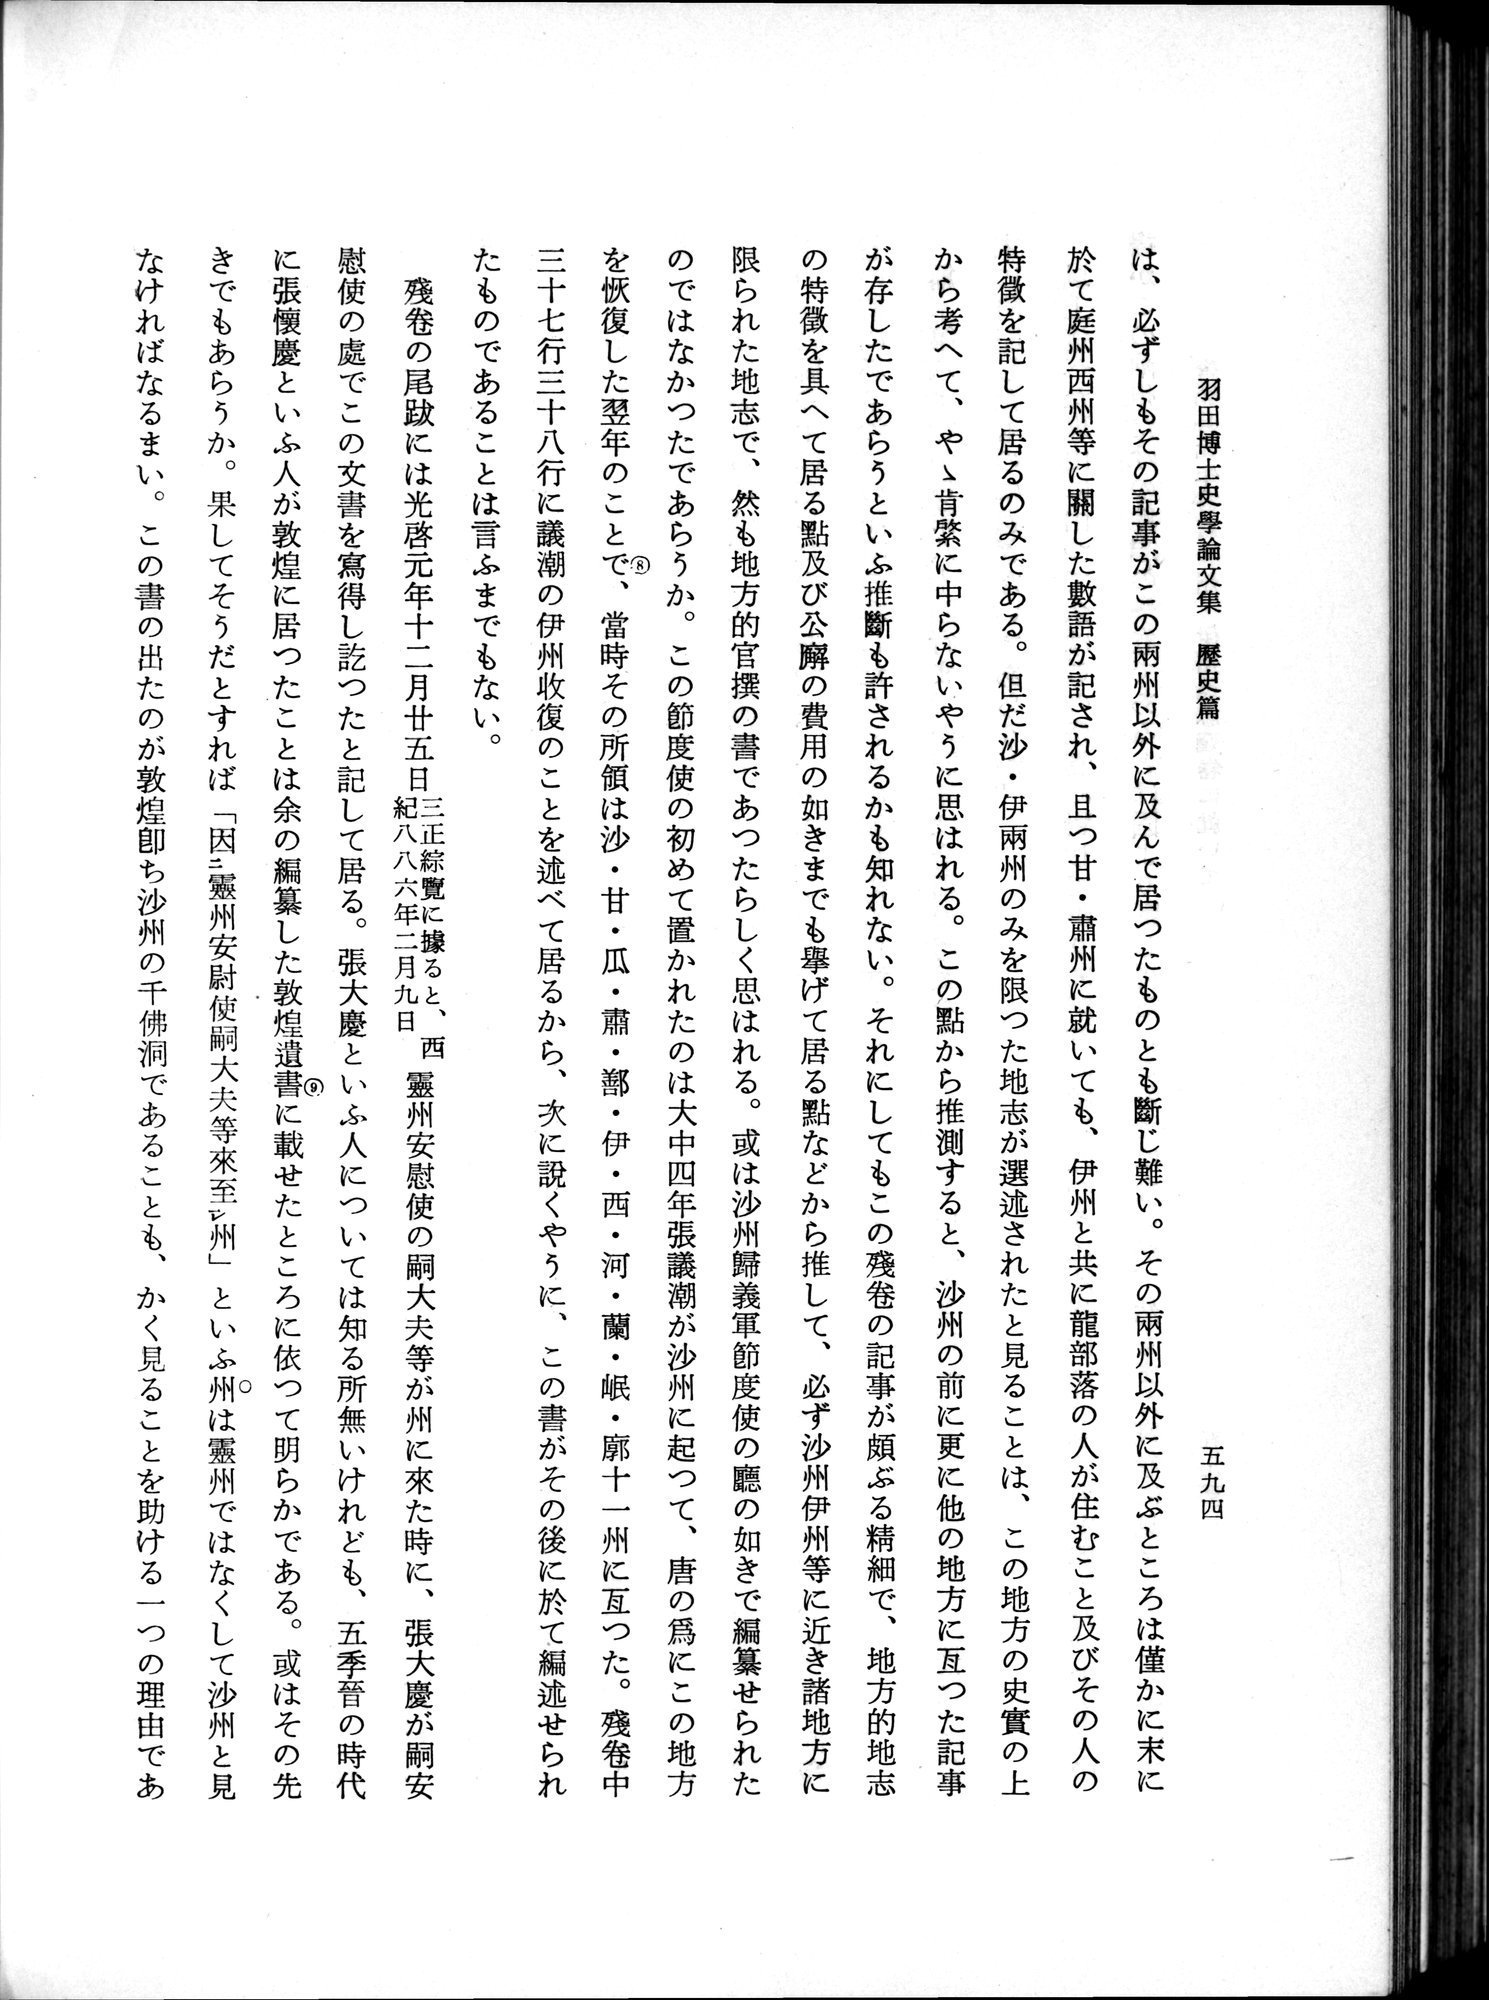 羽田博士史学論文集 : vol.1 / Page 632 (Grayscale High Resolution Image)